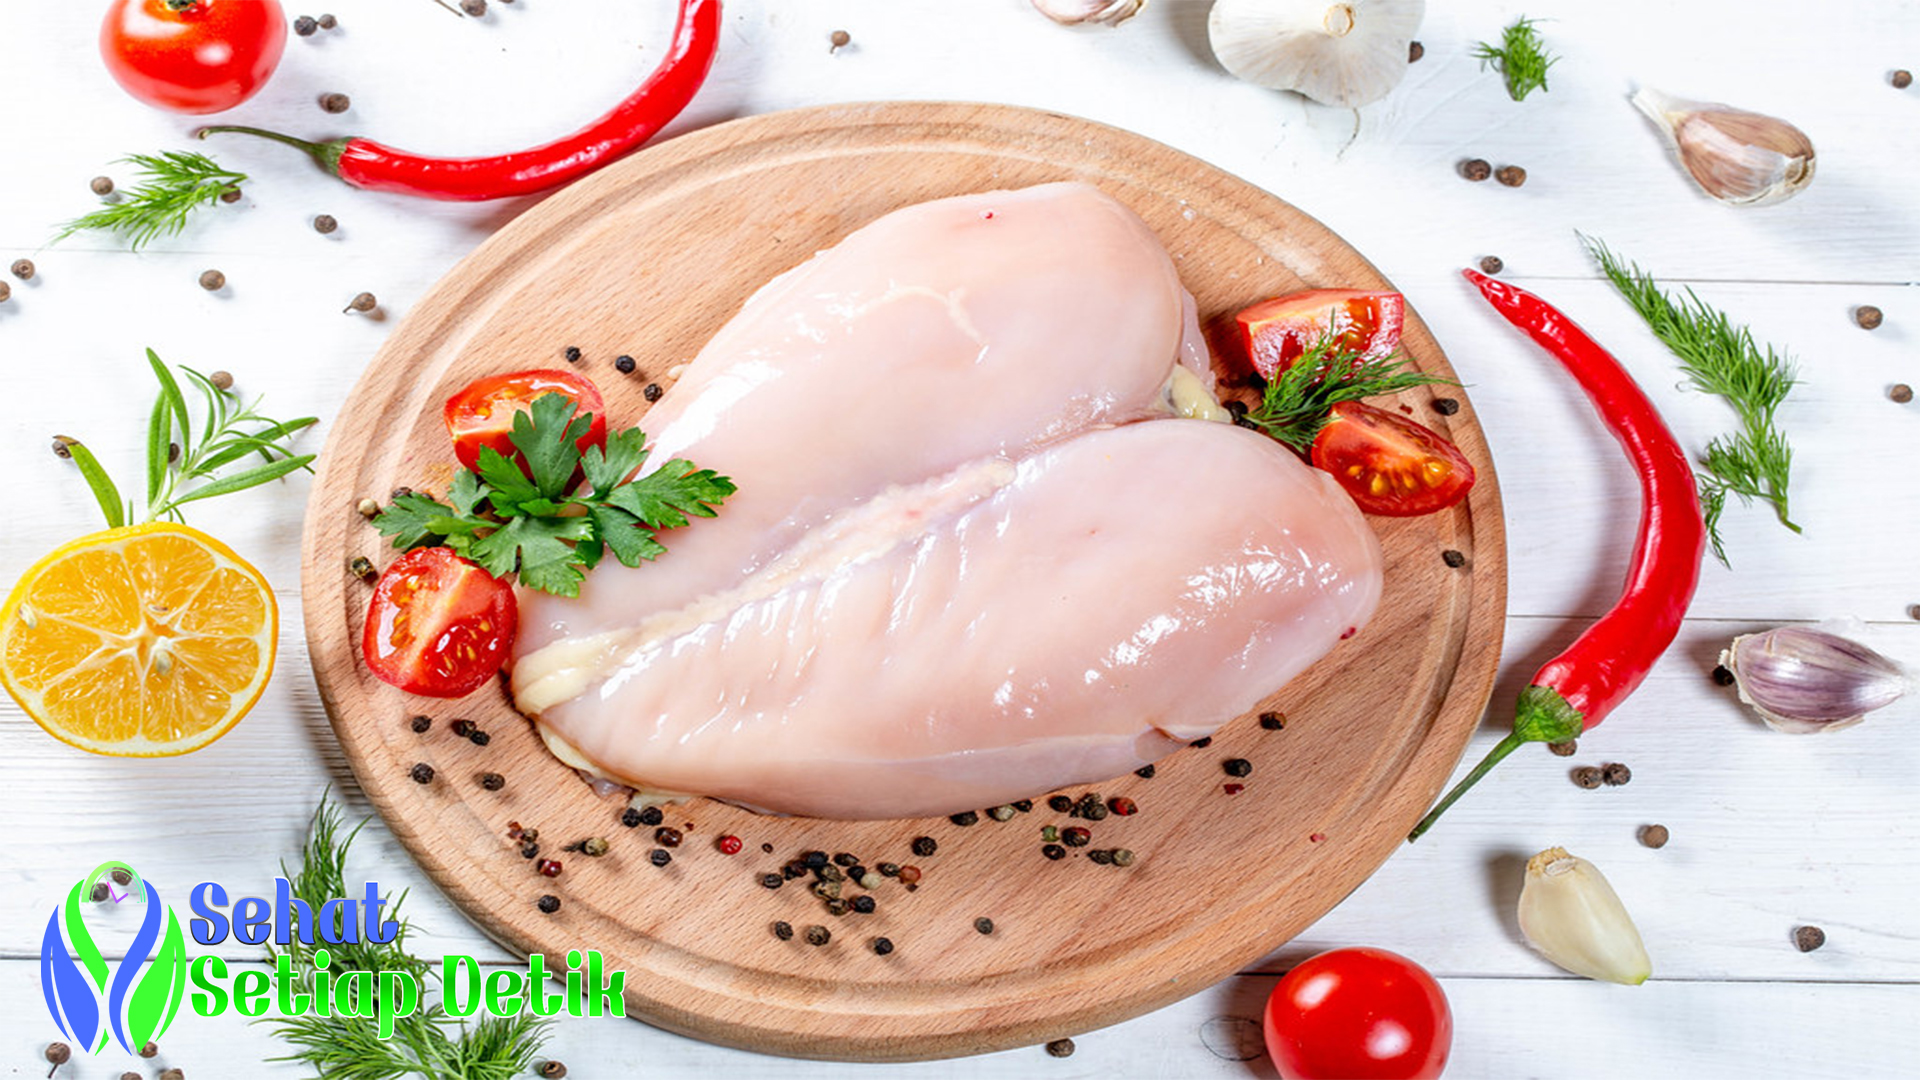 Kandungan Nutrisi Dada Ayam dan Manfaatnya bagi Kesehatan